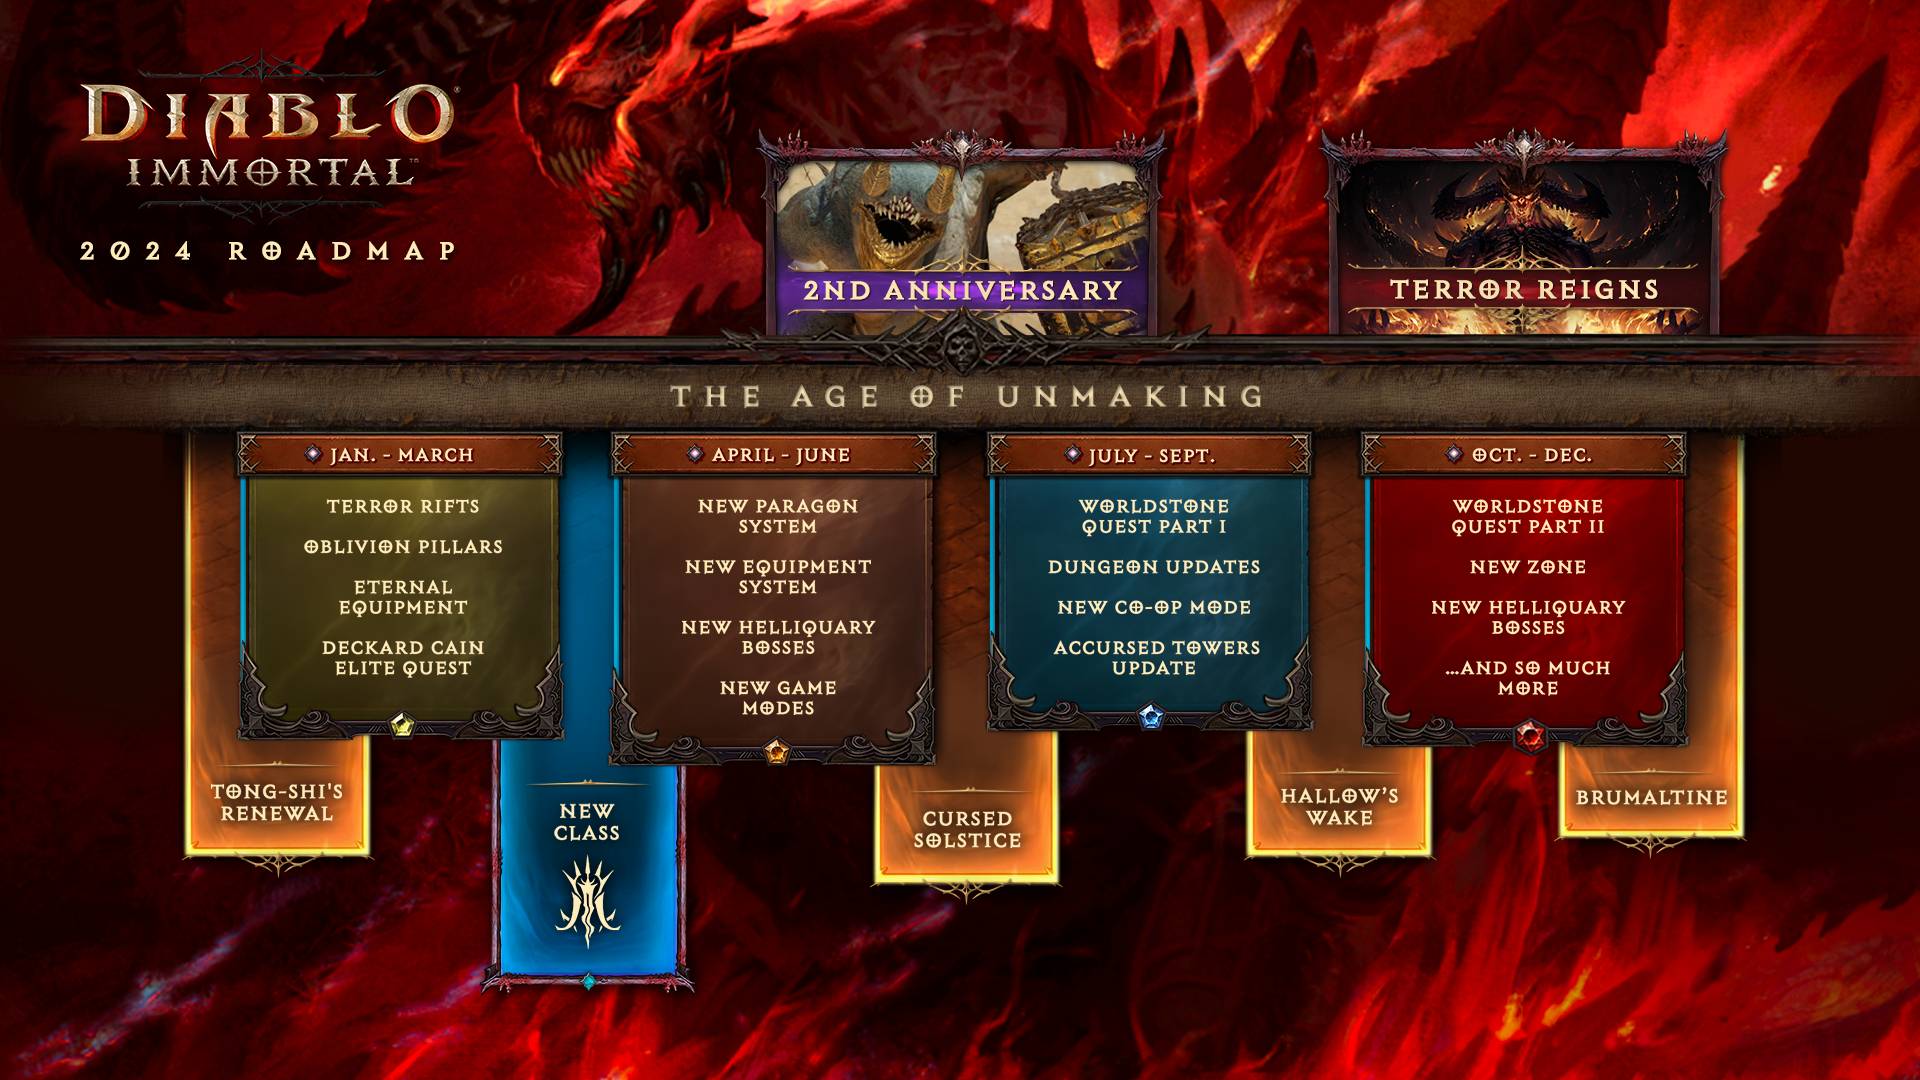 Die Infografik zur Diablo Immortal 2024-Roadmap.  zeigt das ganze Jahr über verschiedene neue Inhalte